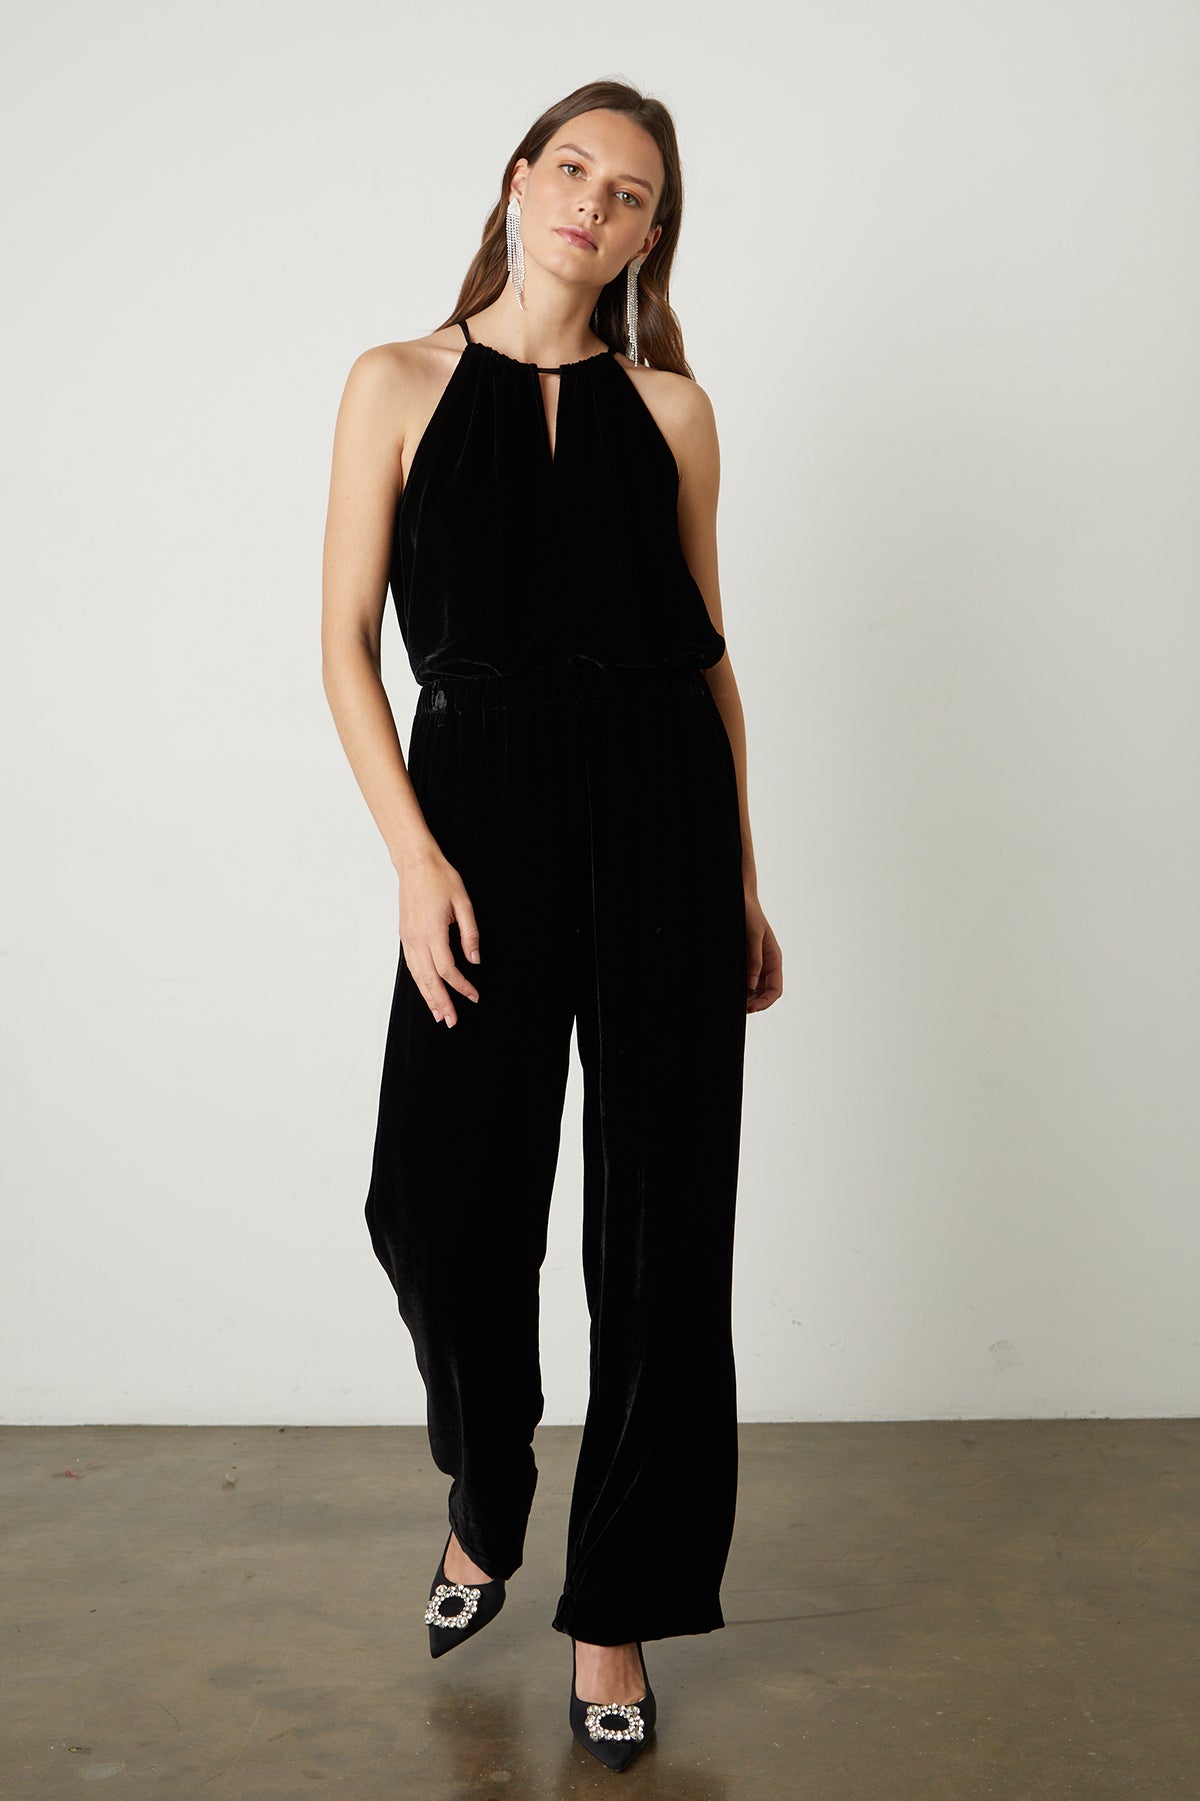 Aleaha Silk Velvet Halter Top in black with Frida pant full length front-25548536938689